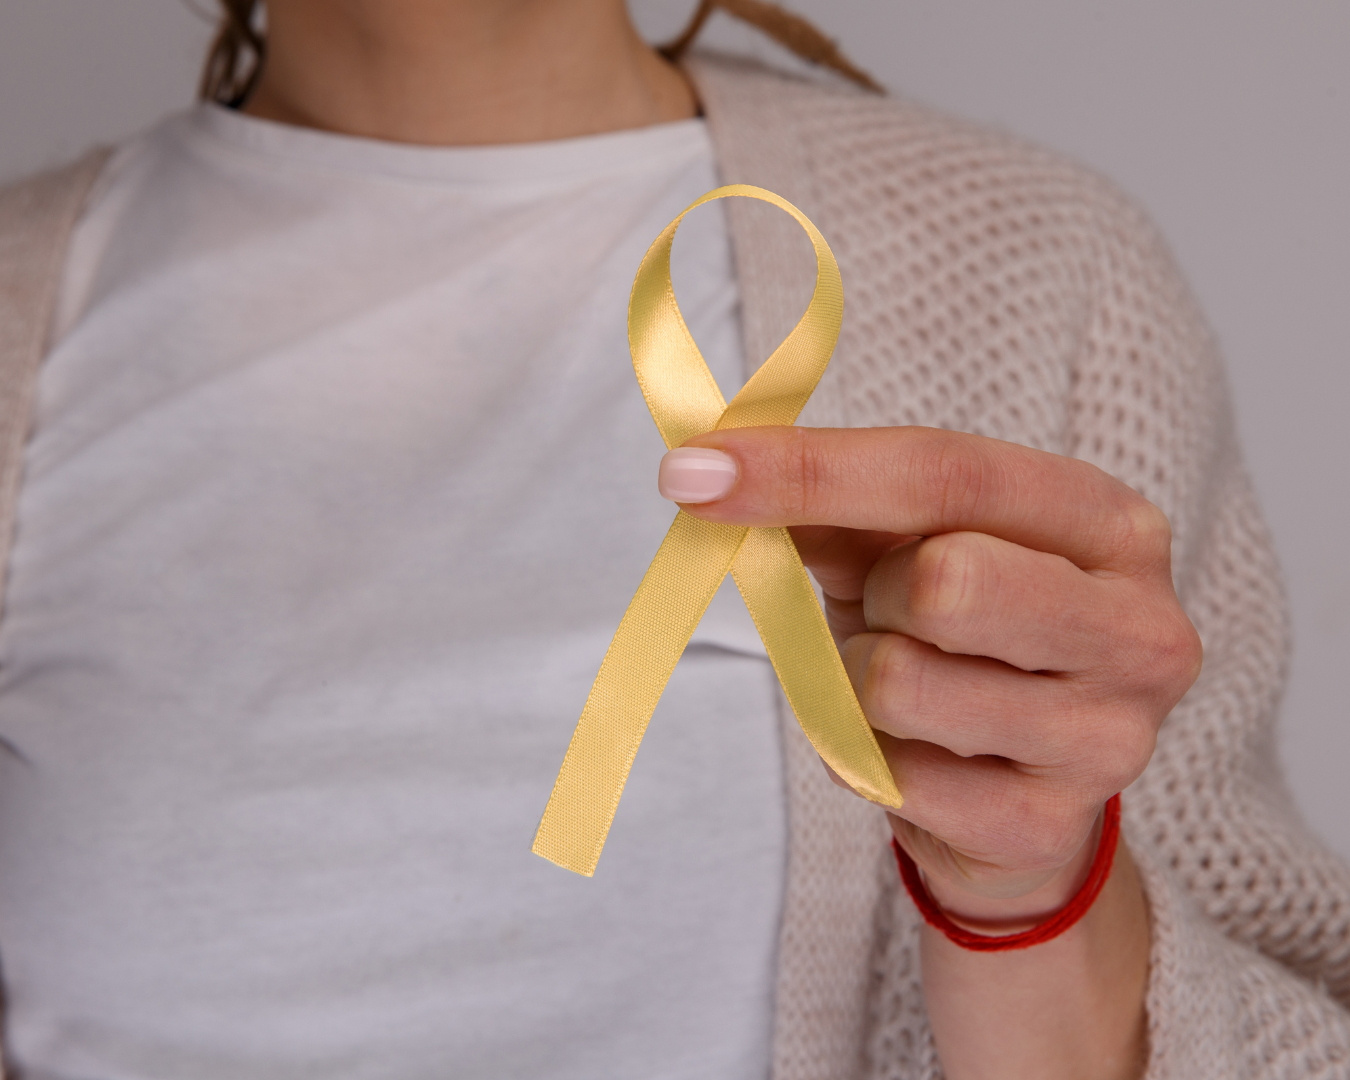 Vásárolj sárga árnyalatú O baget vagy kiegészítőt – Támogasd a Női Egészségért Alapítványt még ma!